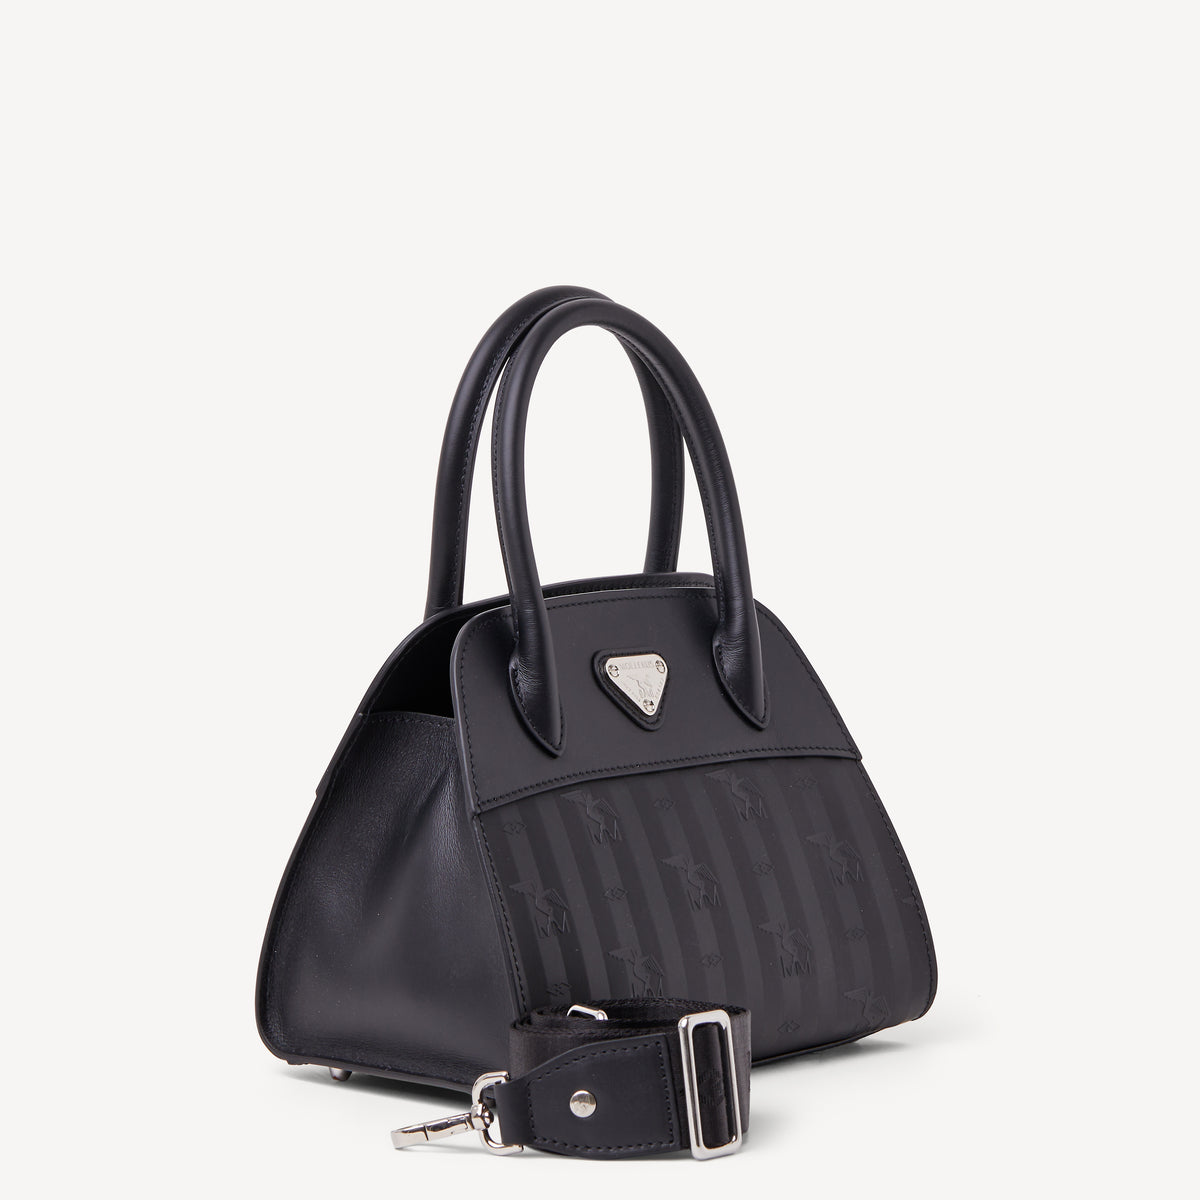 SOGLIO | Handtasche schwarz/silber - seitlich